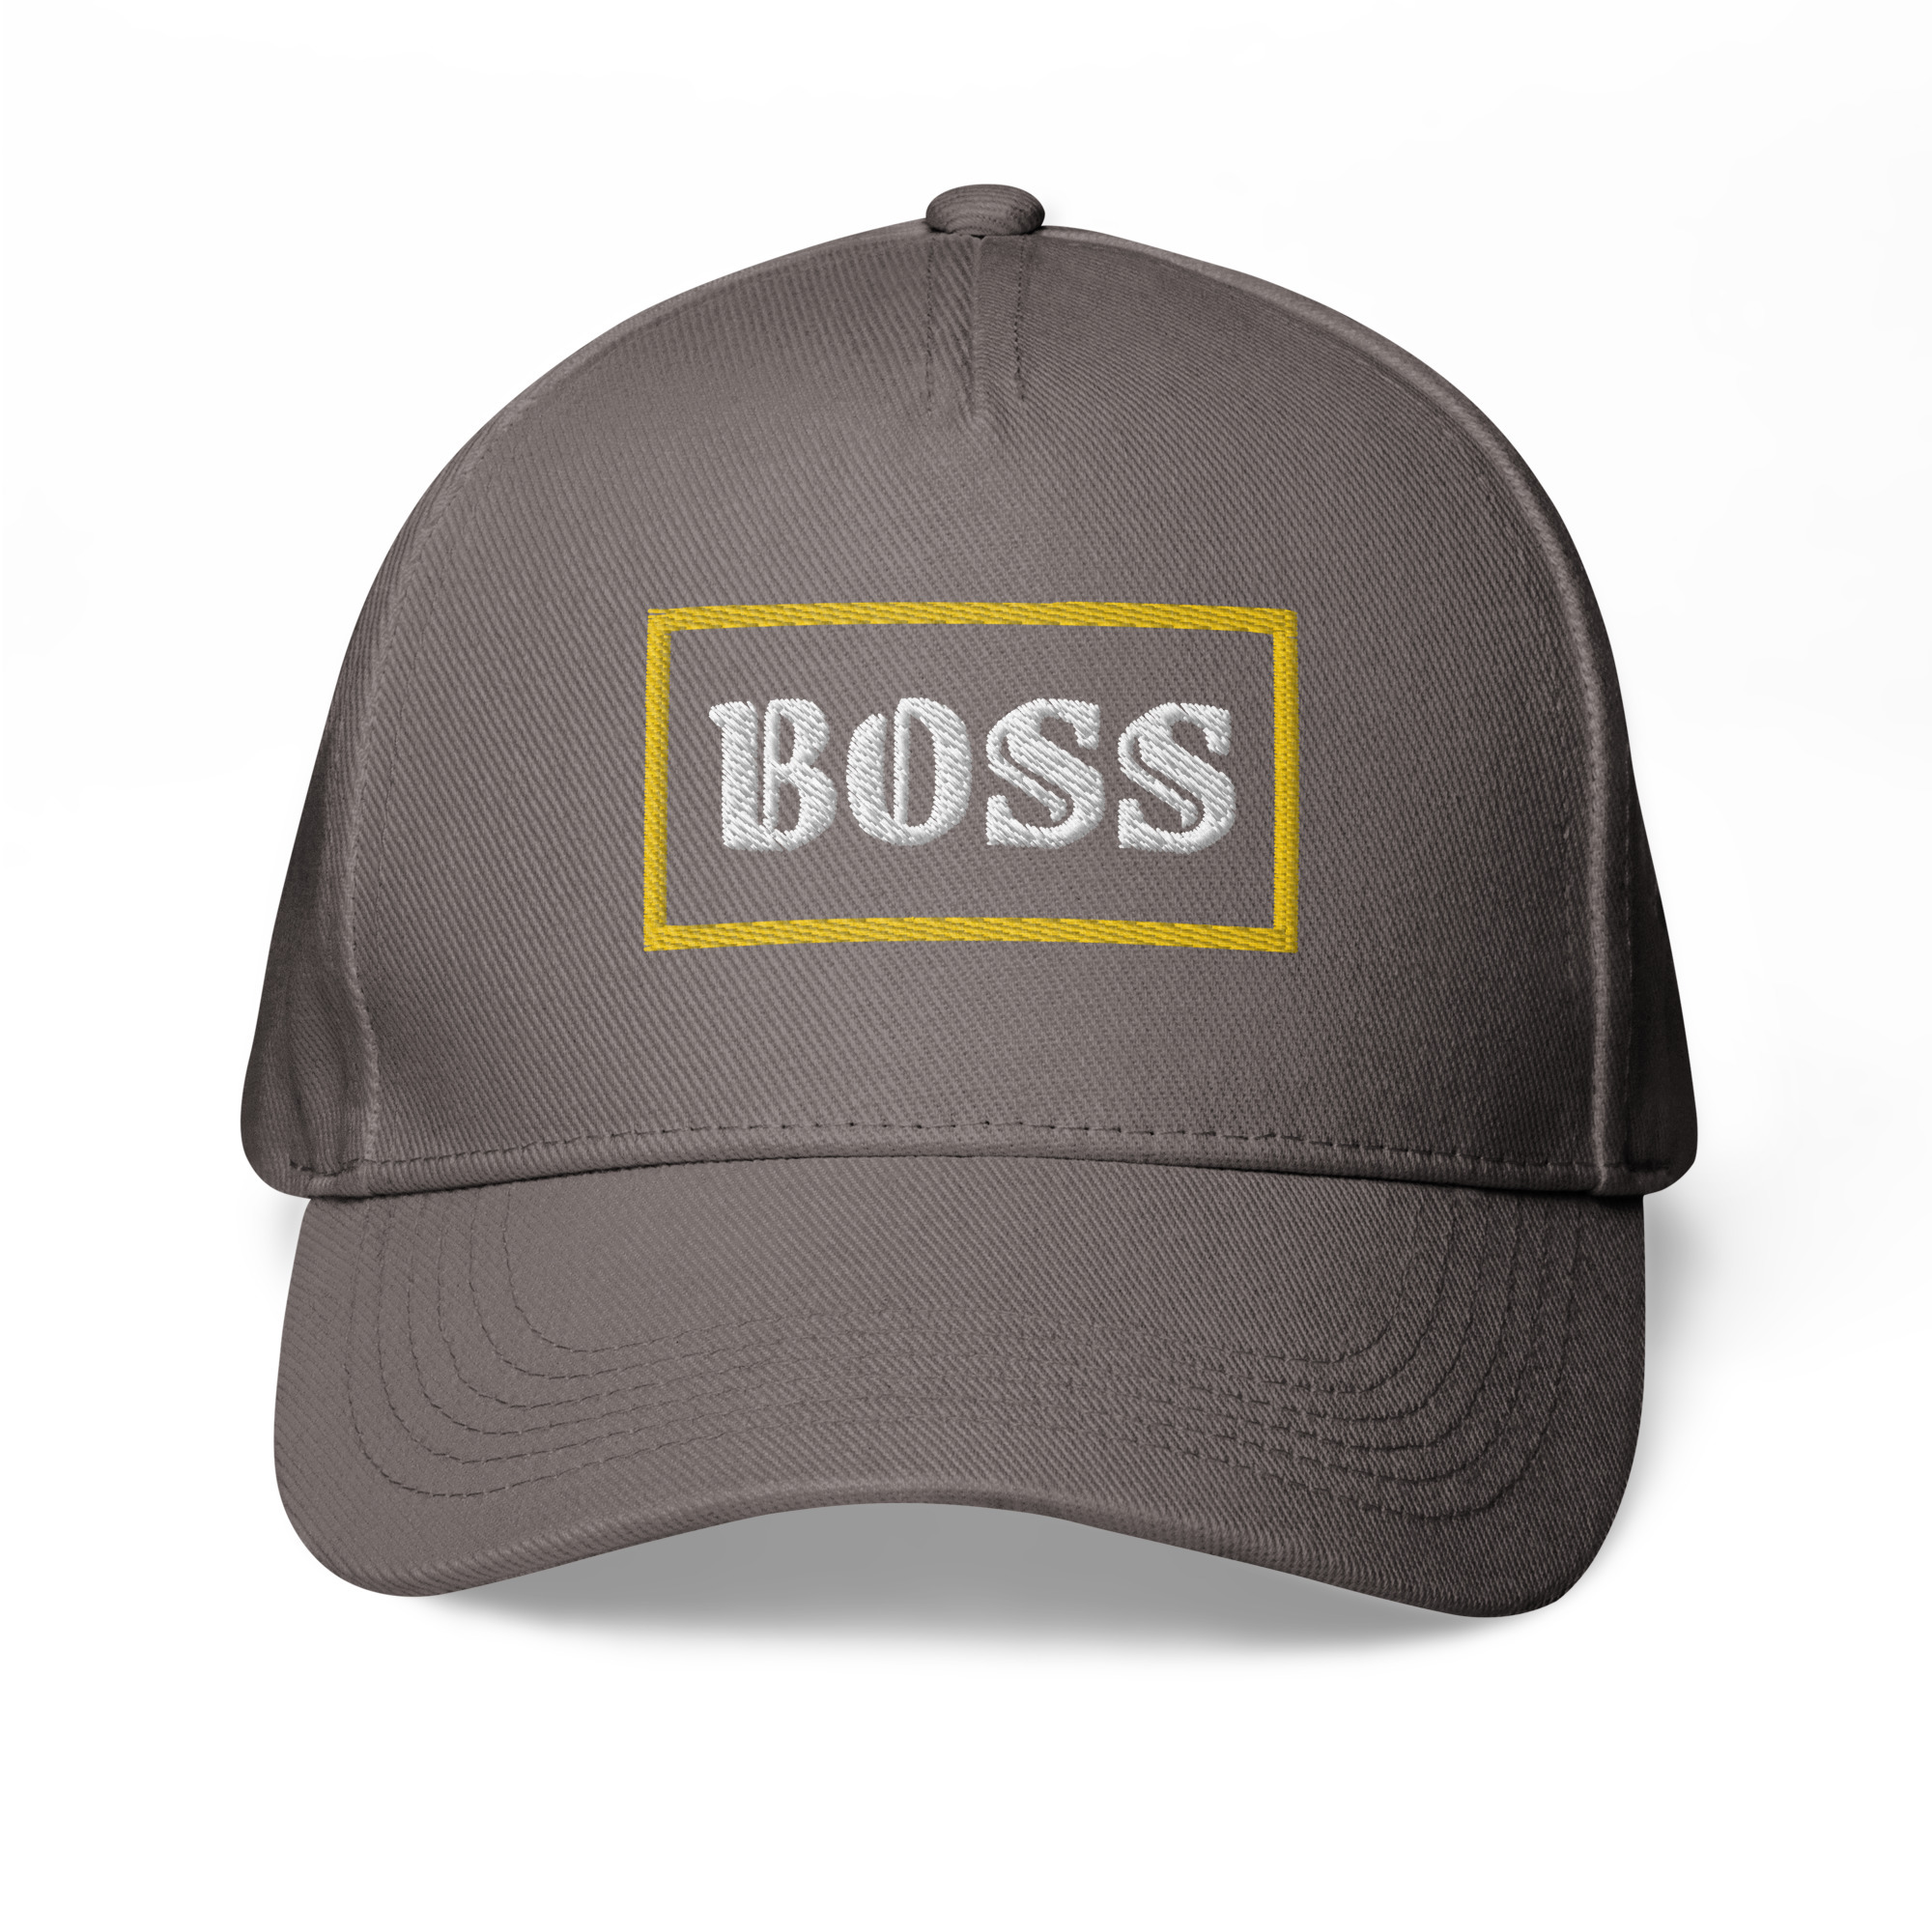 Boss on baseball Classic cap